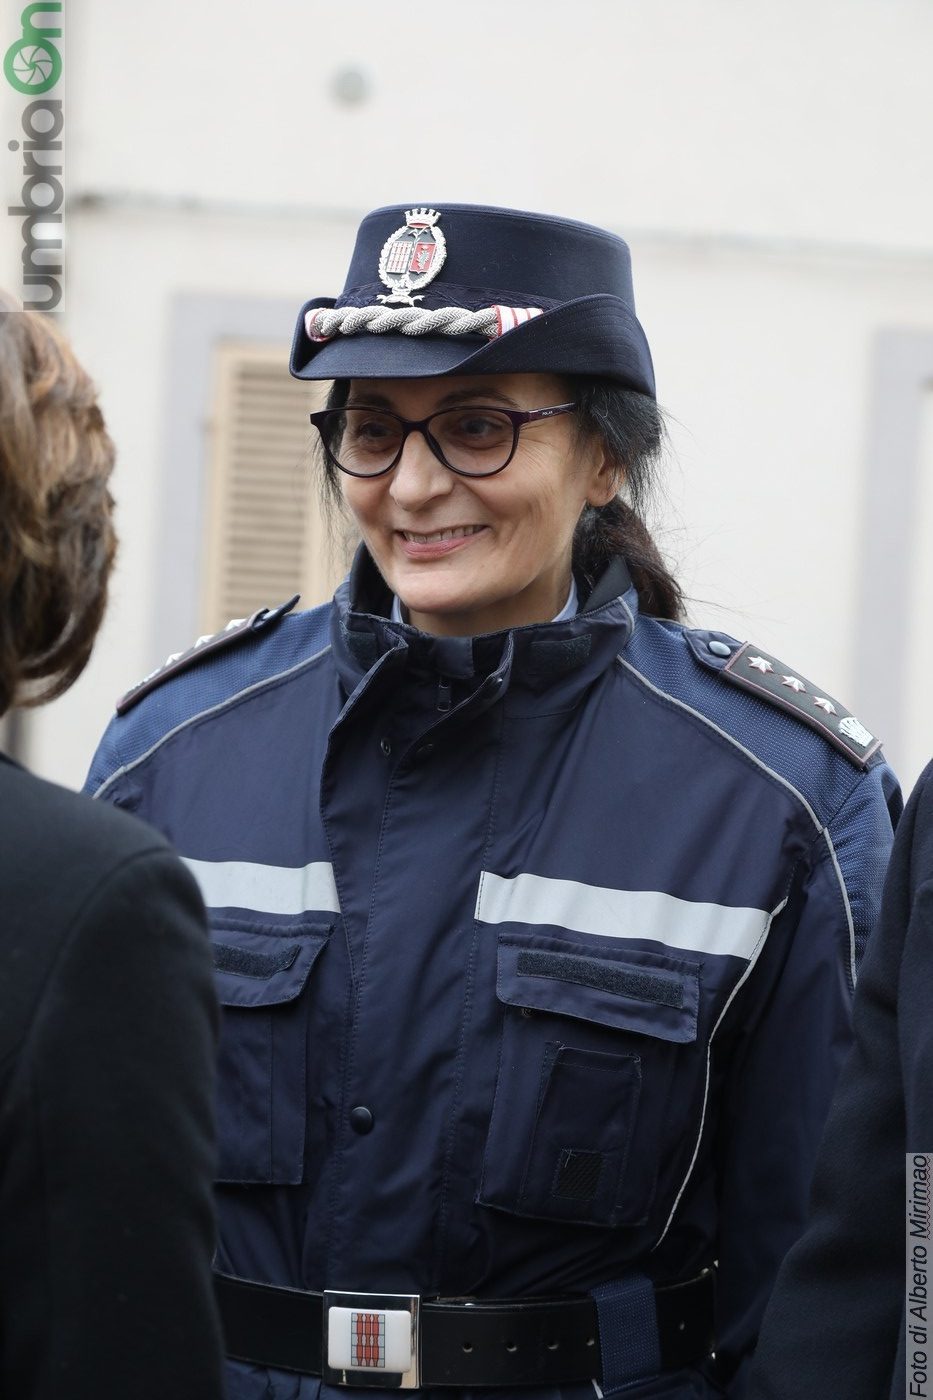 San-Sebastiano-Polizia-Locale-Terni-cerimonia-20-gennaio-2020-76-e1579523312960